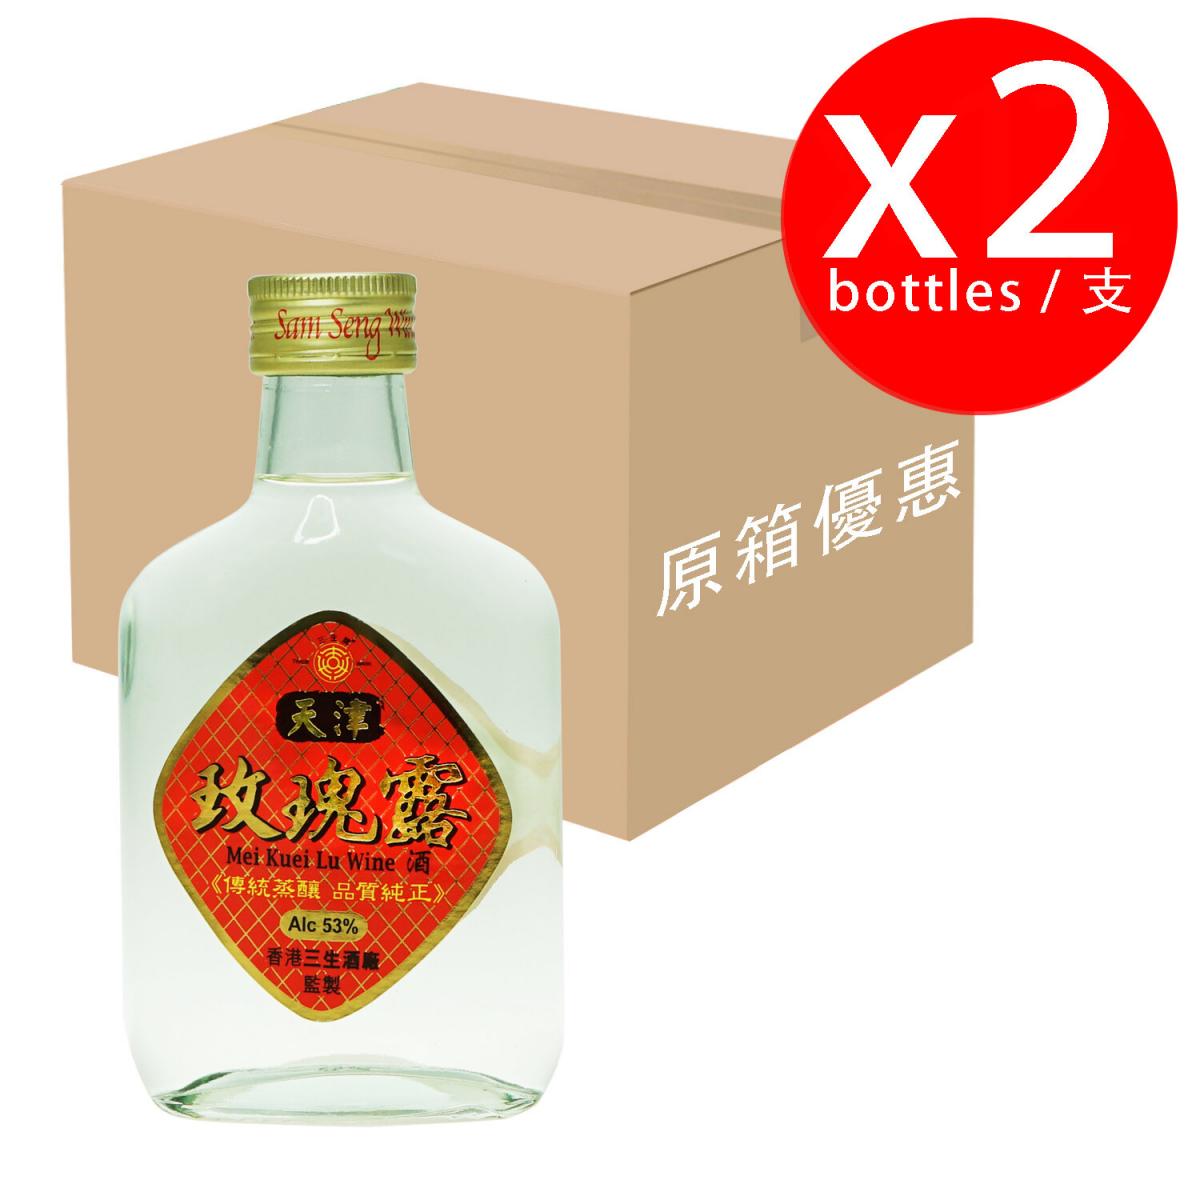 五十三度頂級天津玫瑰露酒 180ml X 2支裝 Mei Kuei Lu Wine 180ml X 2